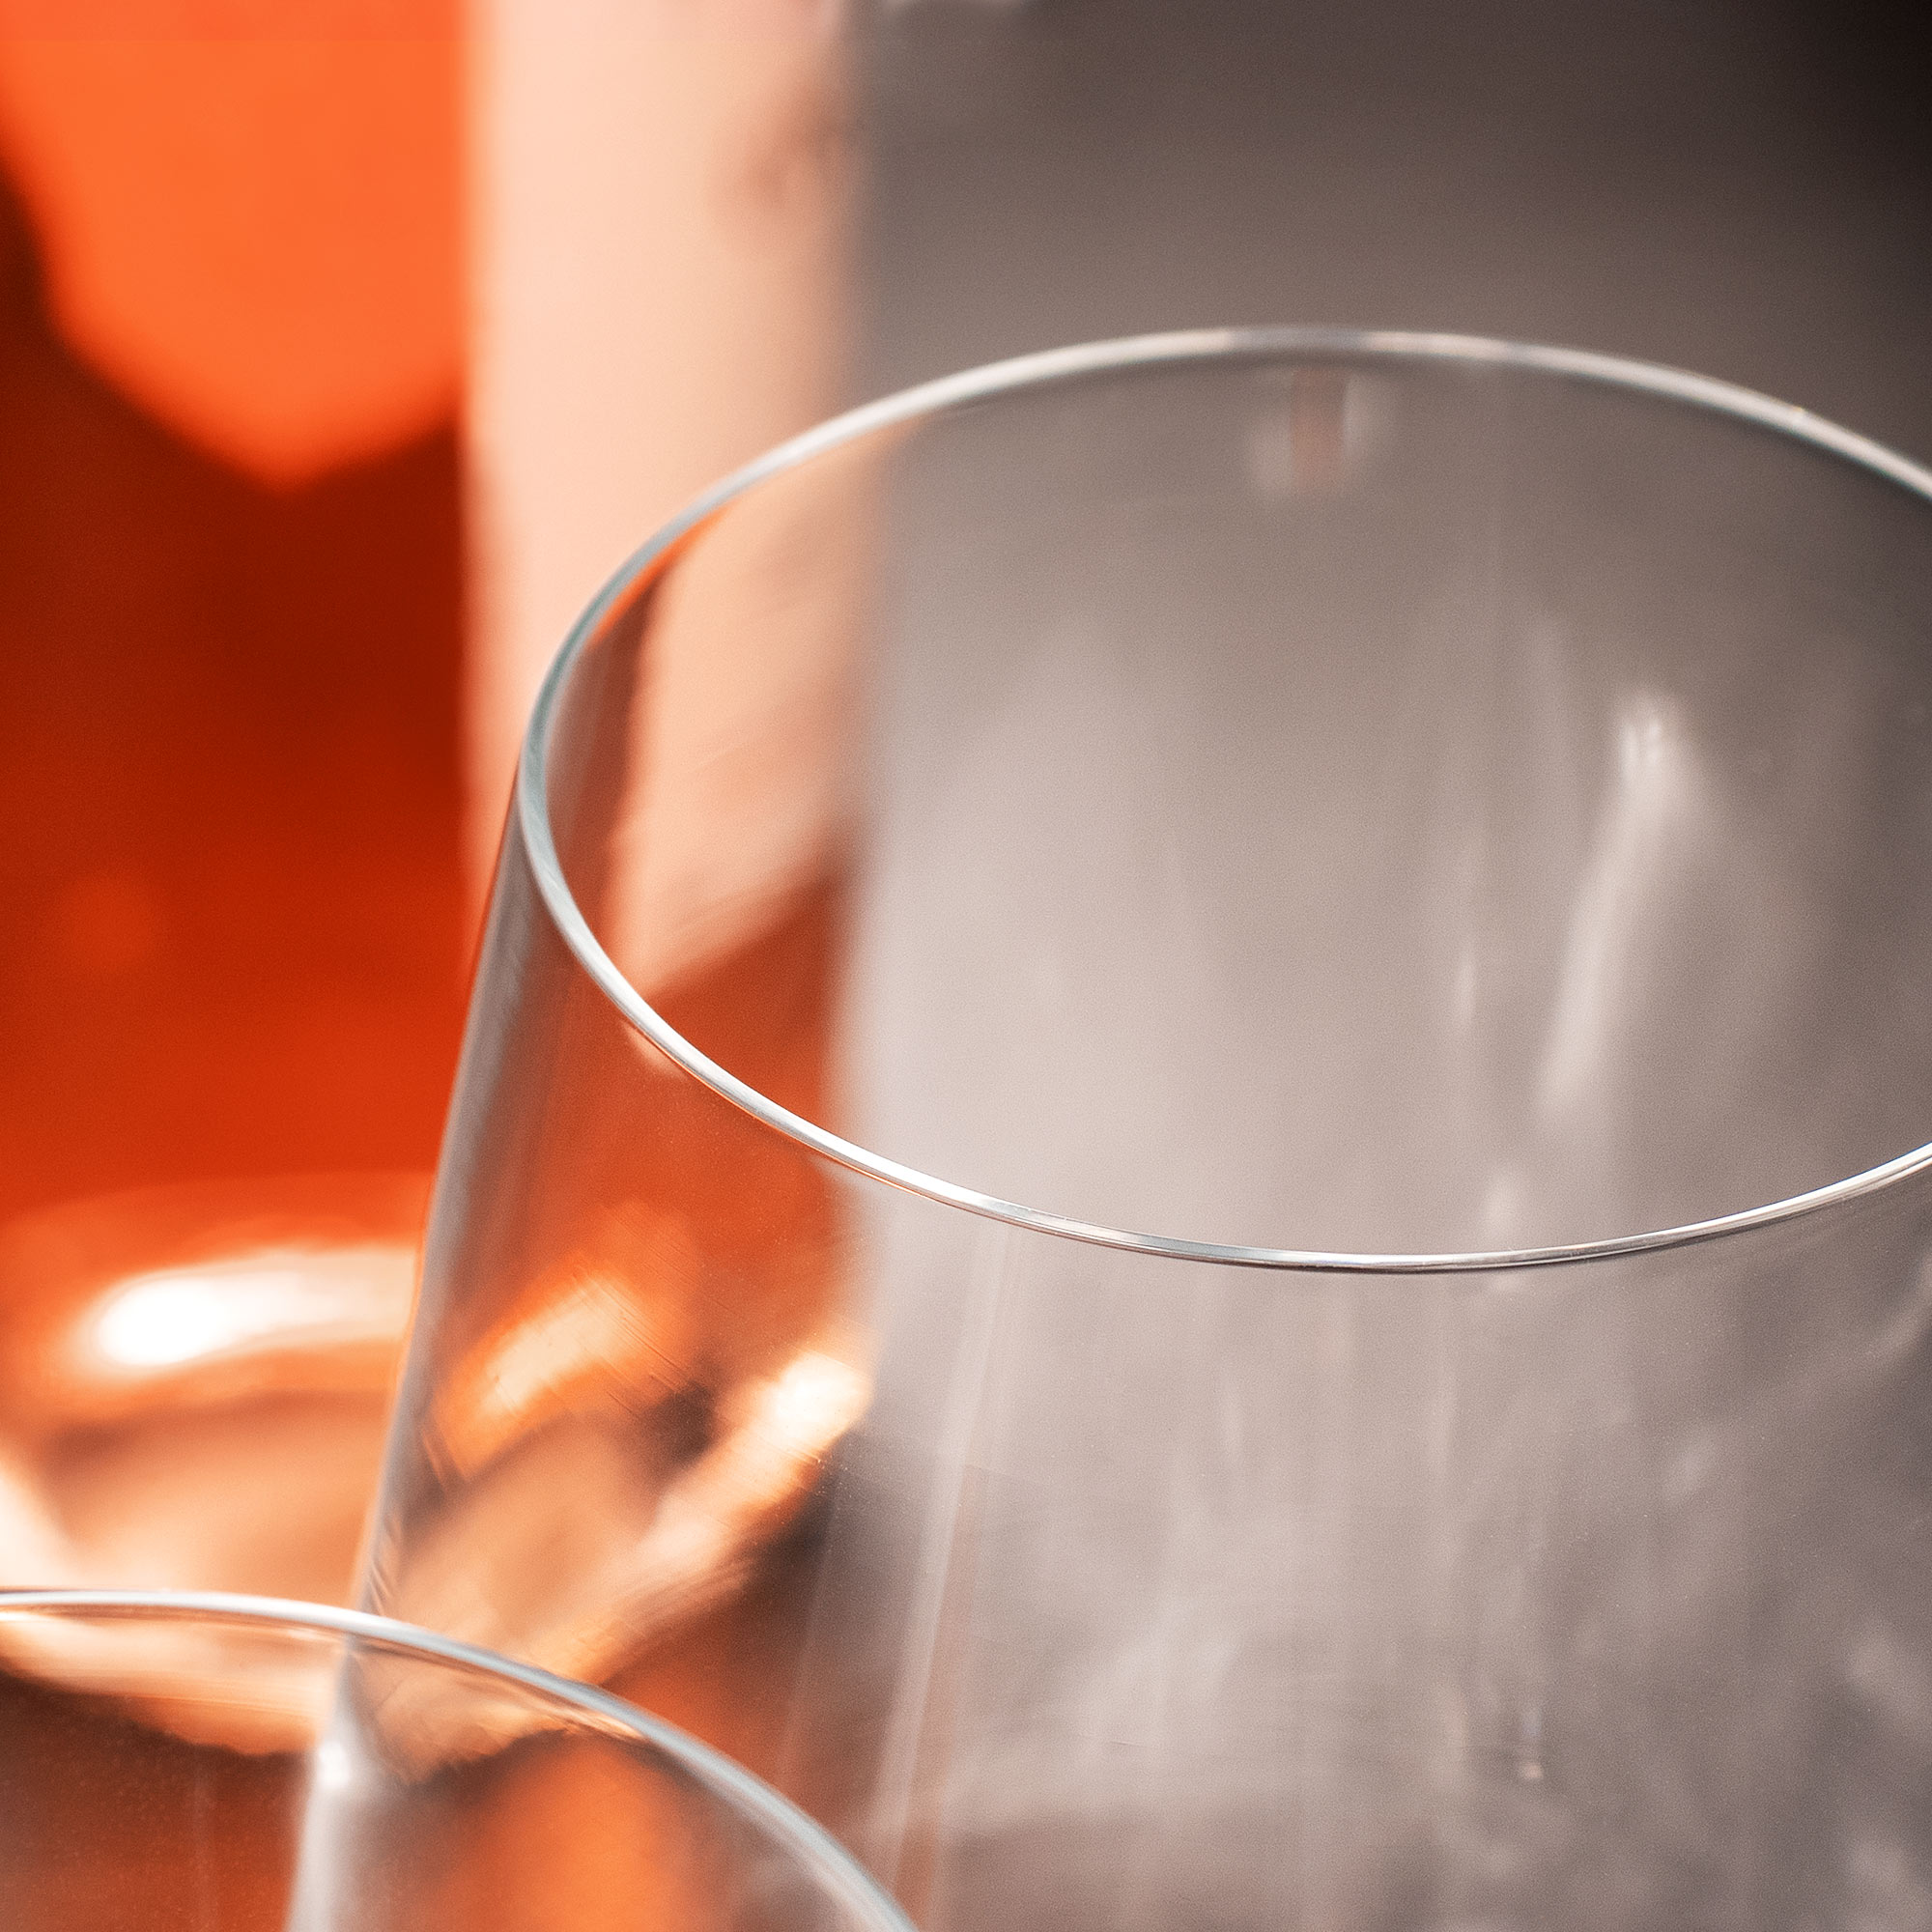 Weinglas mit Gravur - Masseinheiten Noch Nicht - Personalisiert